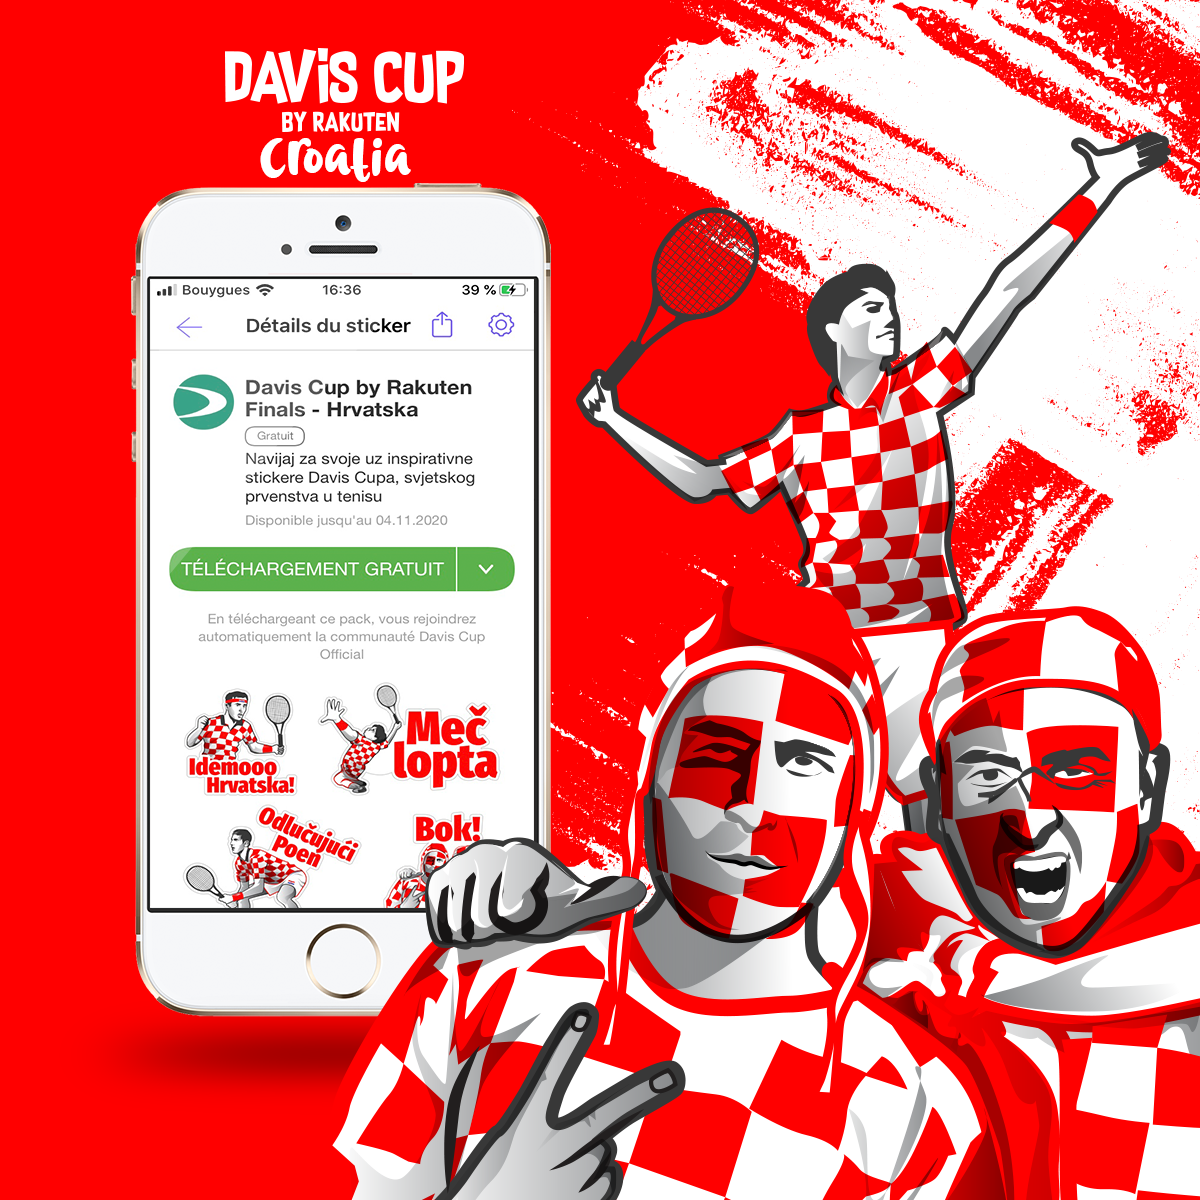 Davis Cup bu Rakuten Finals - Croatia